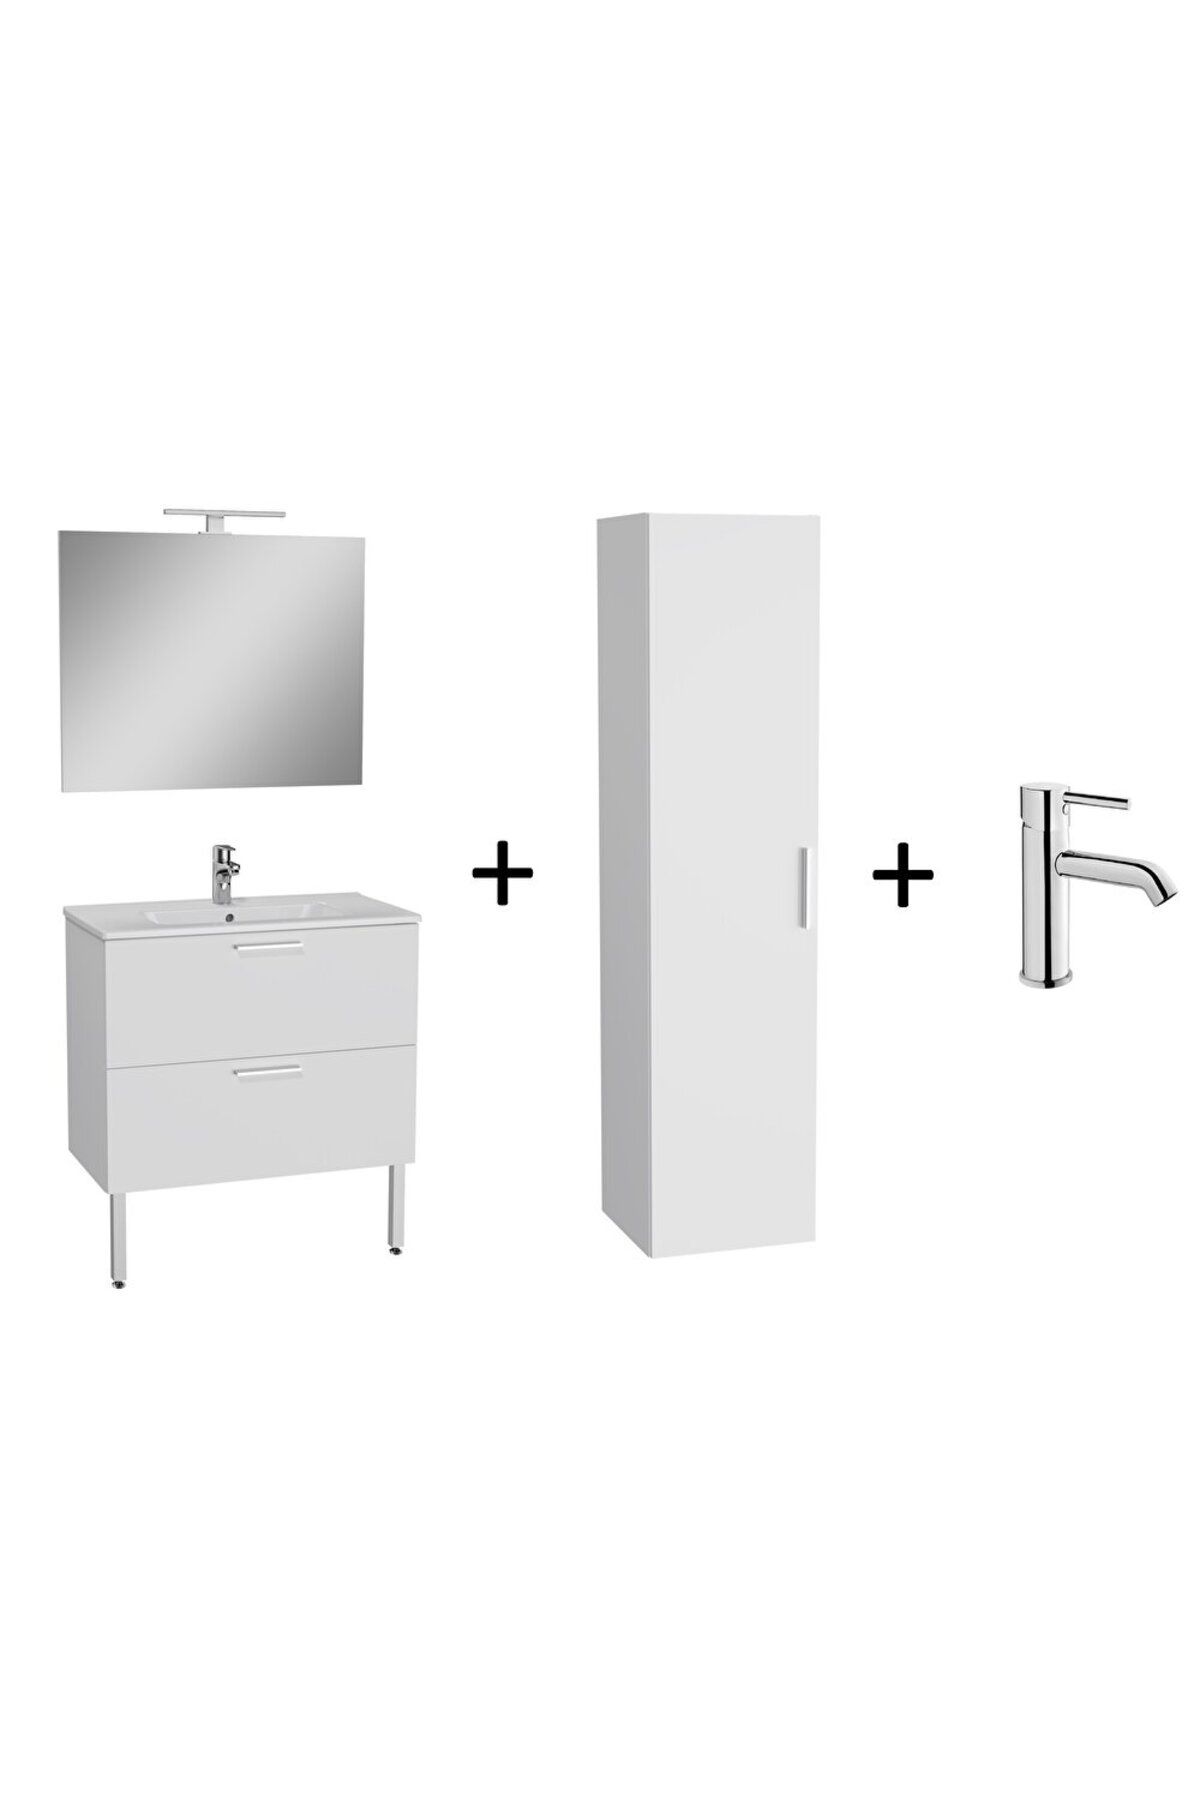 VitrA Banyo Mobilyası Seti, Parlak Beyaz, 80 Cm, Ayaklı, Çekmeceli